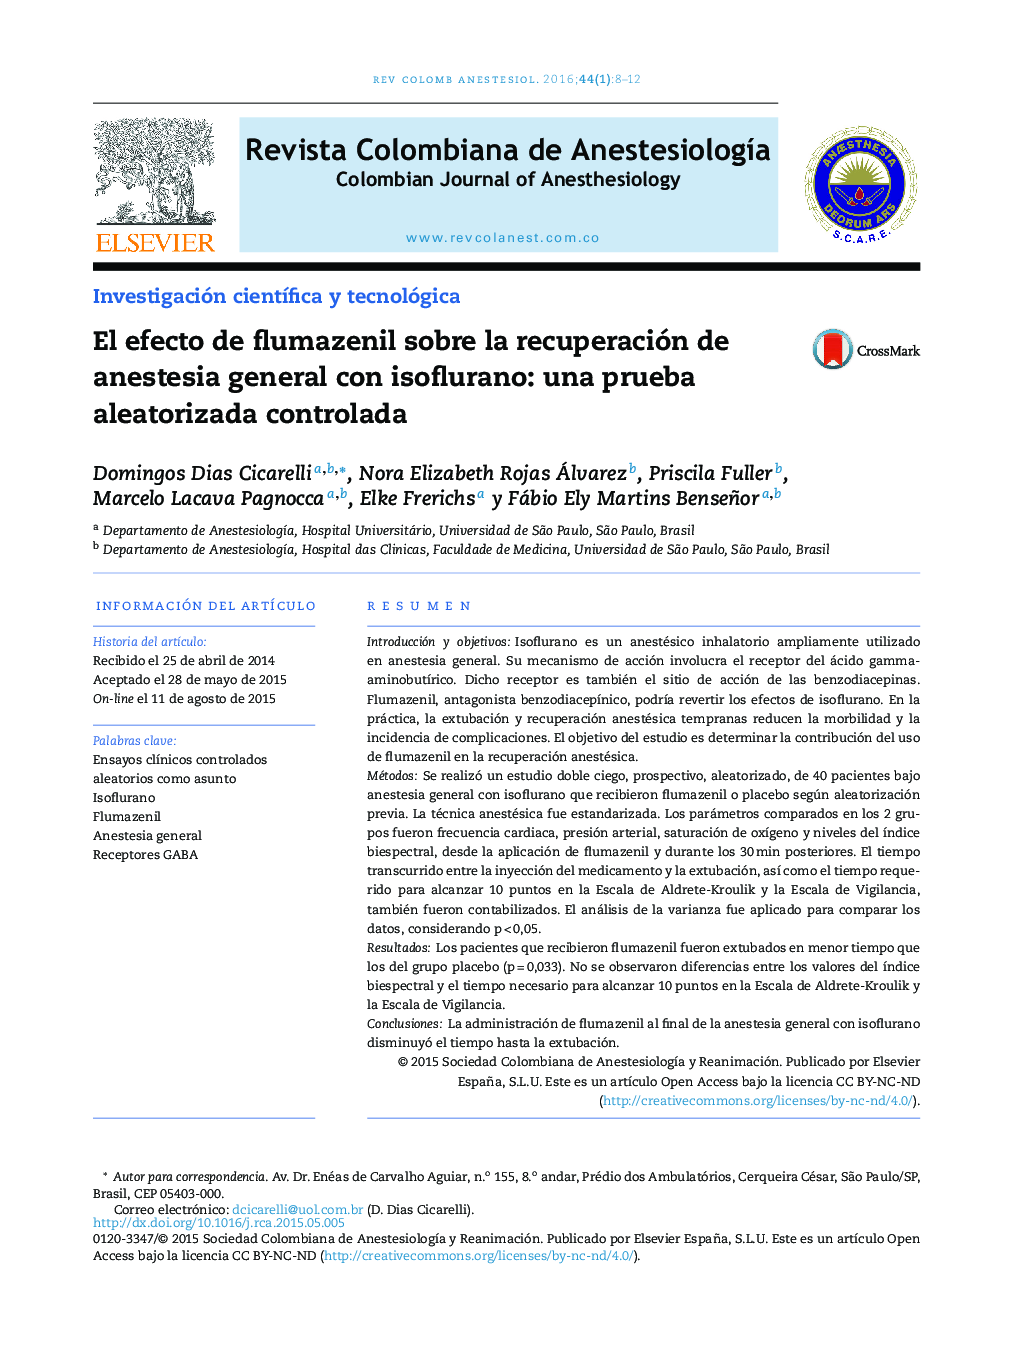 El efecto de flumazenil sobre la recuperación de anestesia general con isoflurano: una prueba aleatorizada controlada